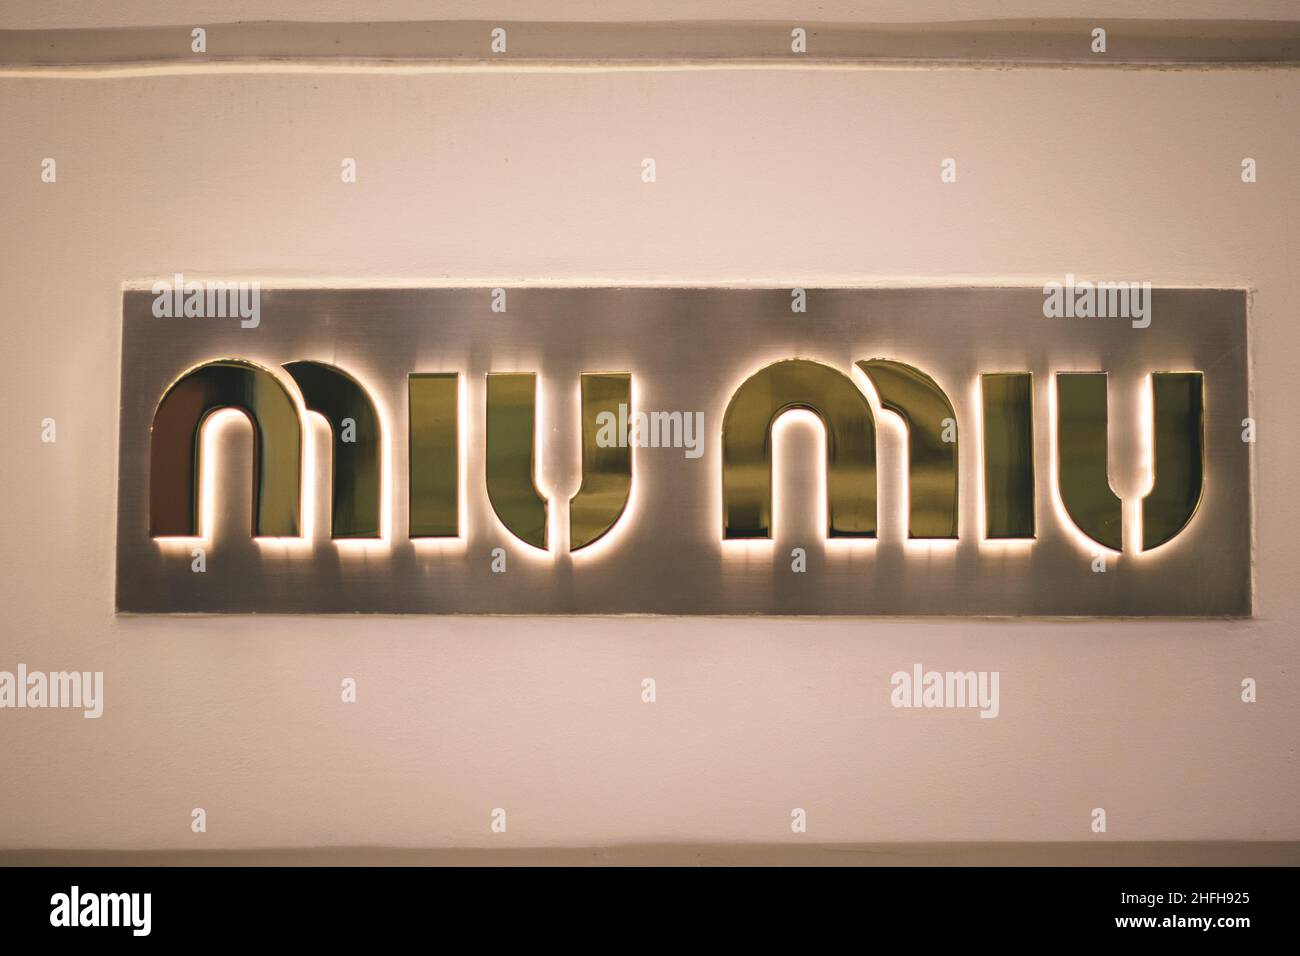 Miu logo design hi-res stock photography and images - Alamy